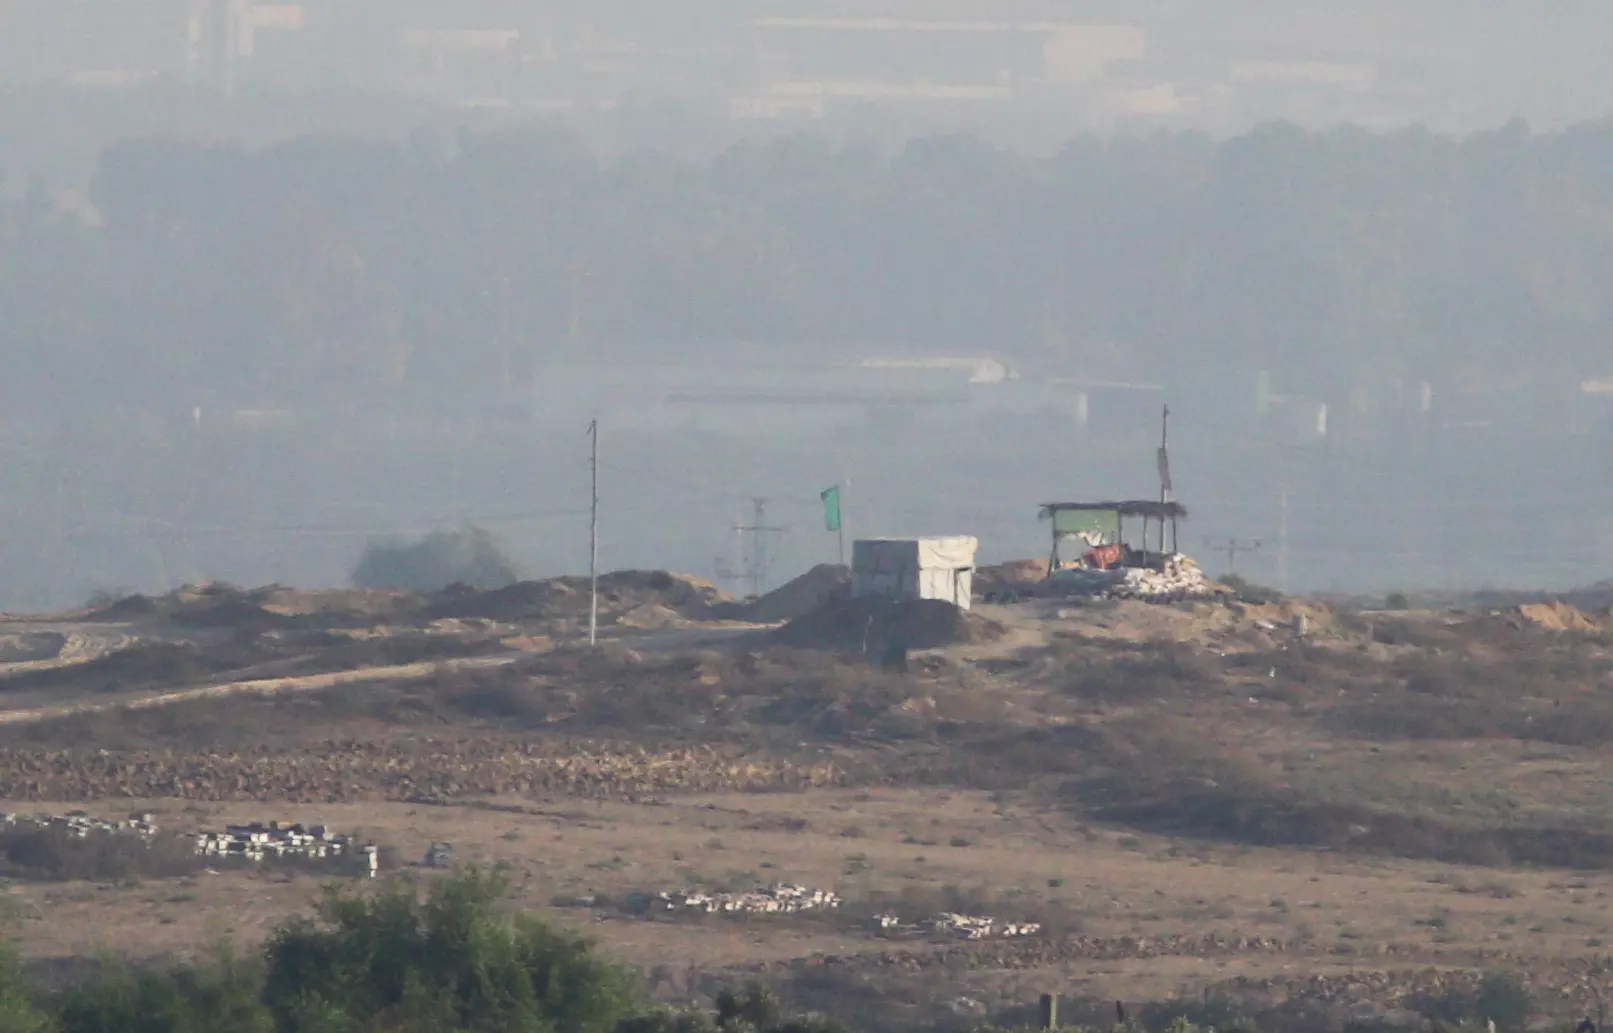 עמדת חמאס, סמוך לקיבוץ ניר עם, אוגוסט 2015